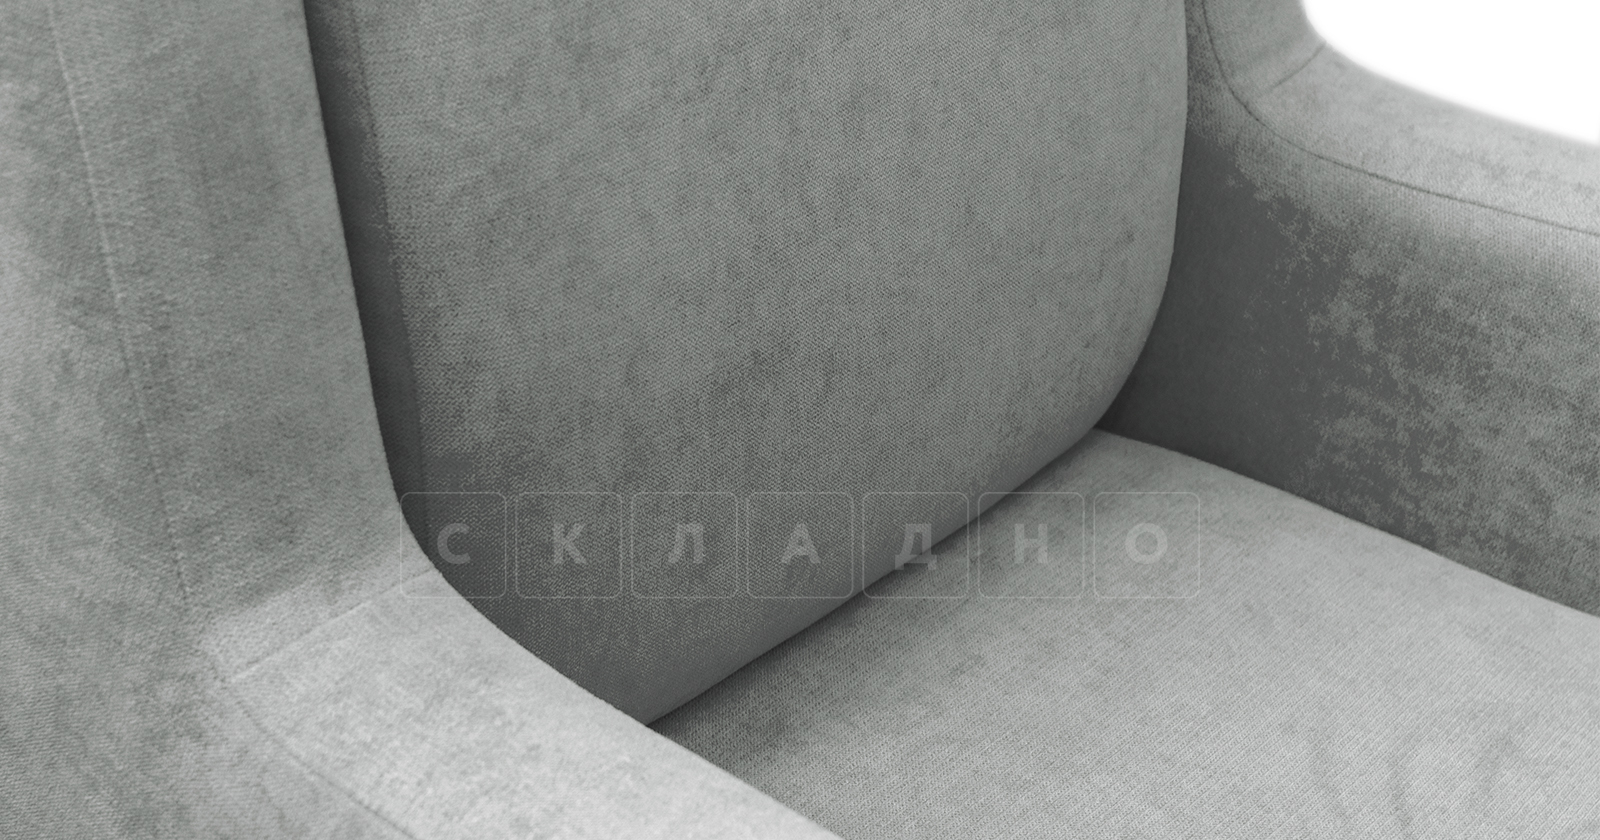 Кресло для отдыха Дарвин серый фото 7 | интернет-магазин Складно